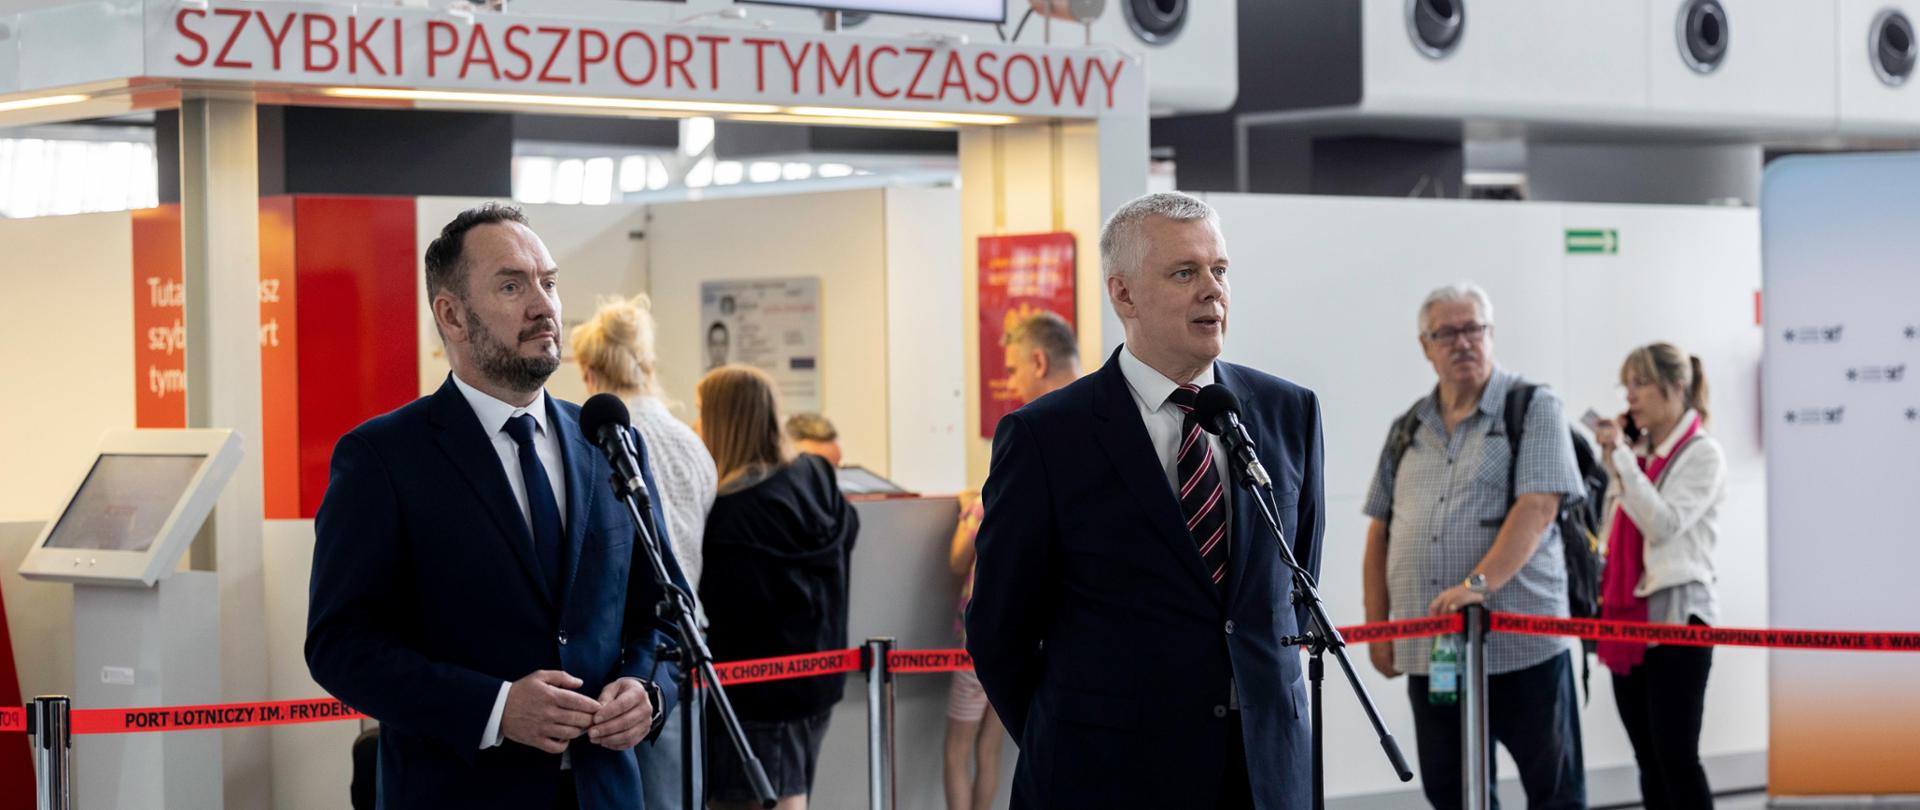 Już w lipcu szybki paszport tymczasowy dostępny na lotniskach w Krakowie, Gdańsku i Katowicach 